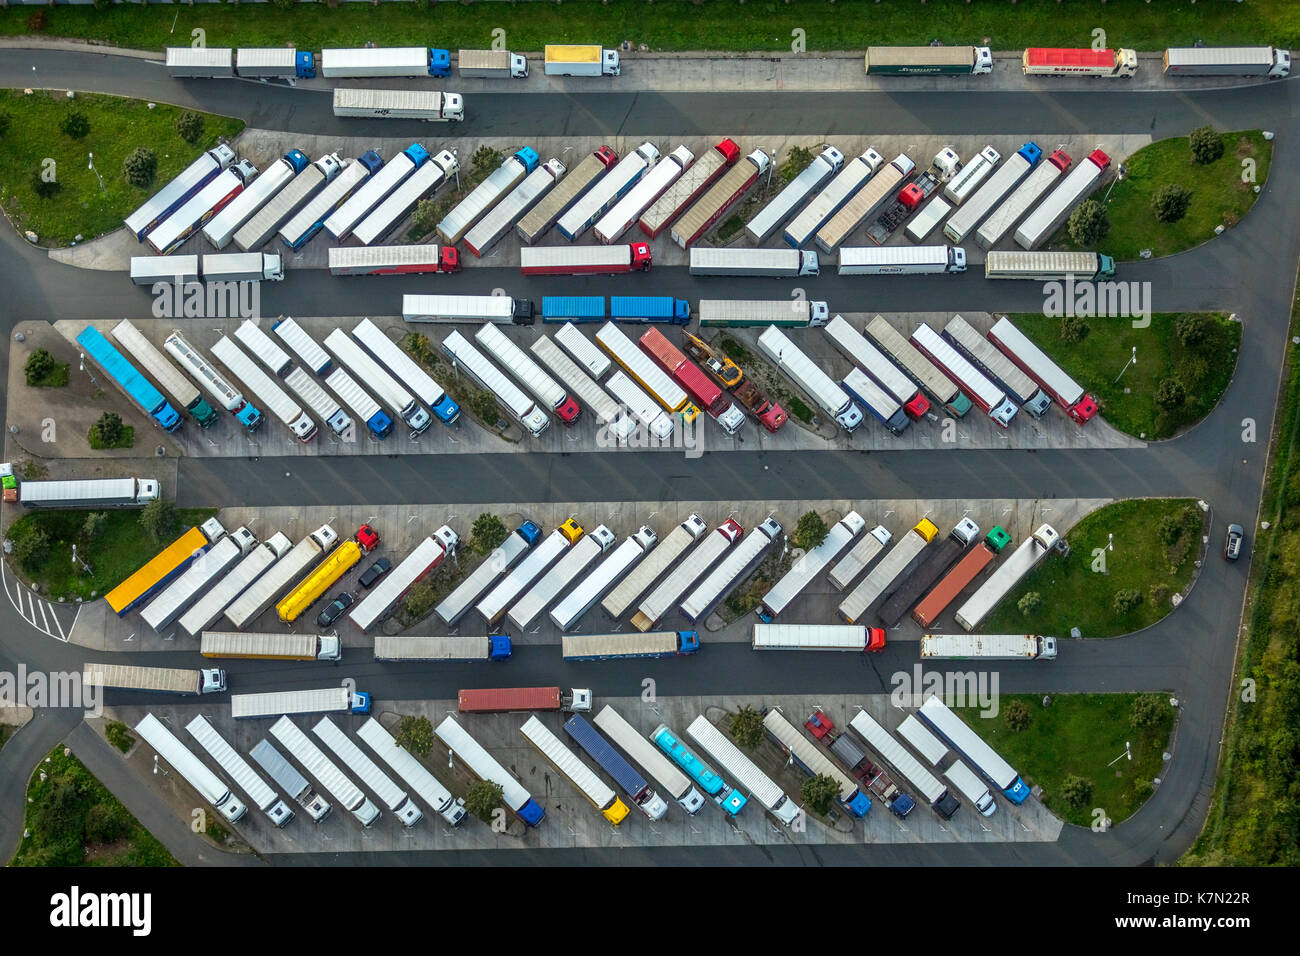 Raststätte Rhynern-Süd, autostrada A2, zona di sosta per camion, parcheggio completo, camion, tempi di guida, schema a spina di pesce Foto Stock